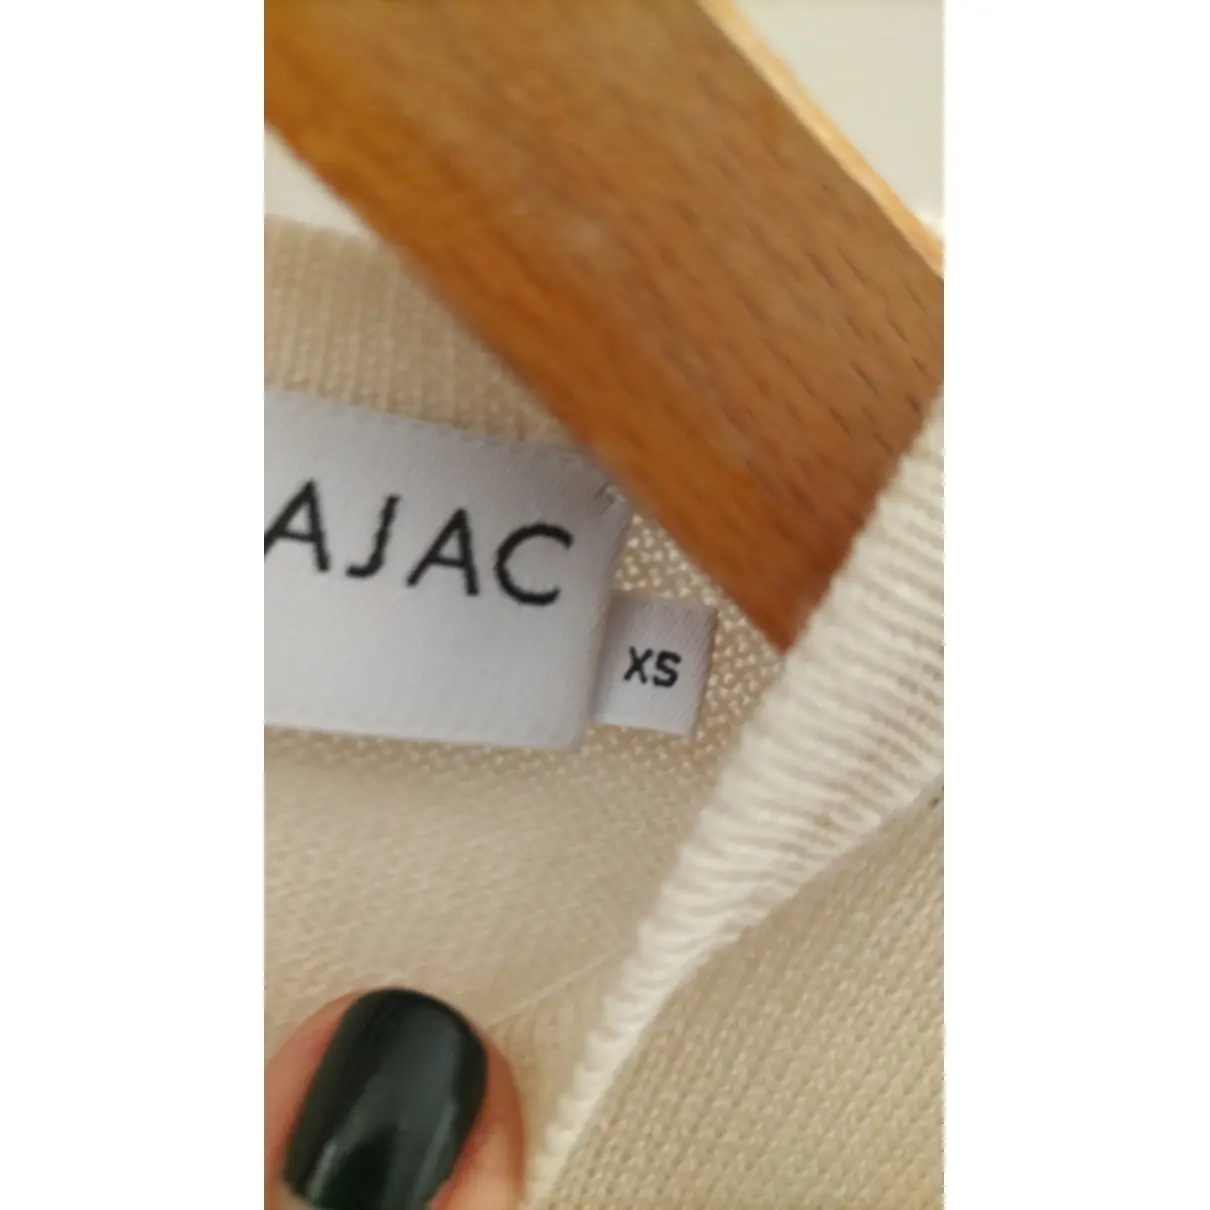 Wool mid-length dress JC De Castelbajac